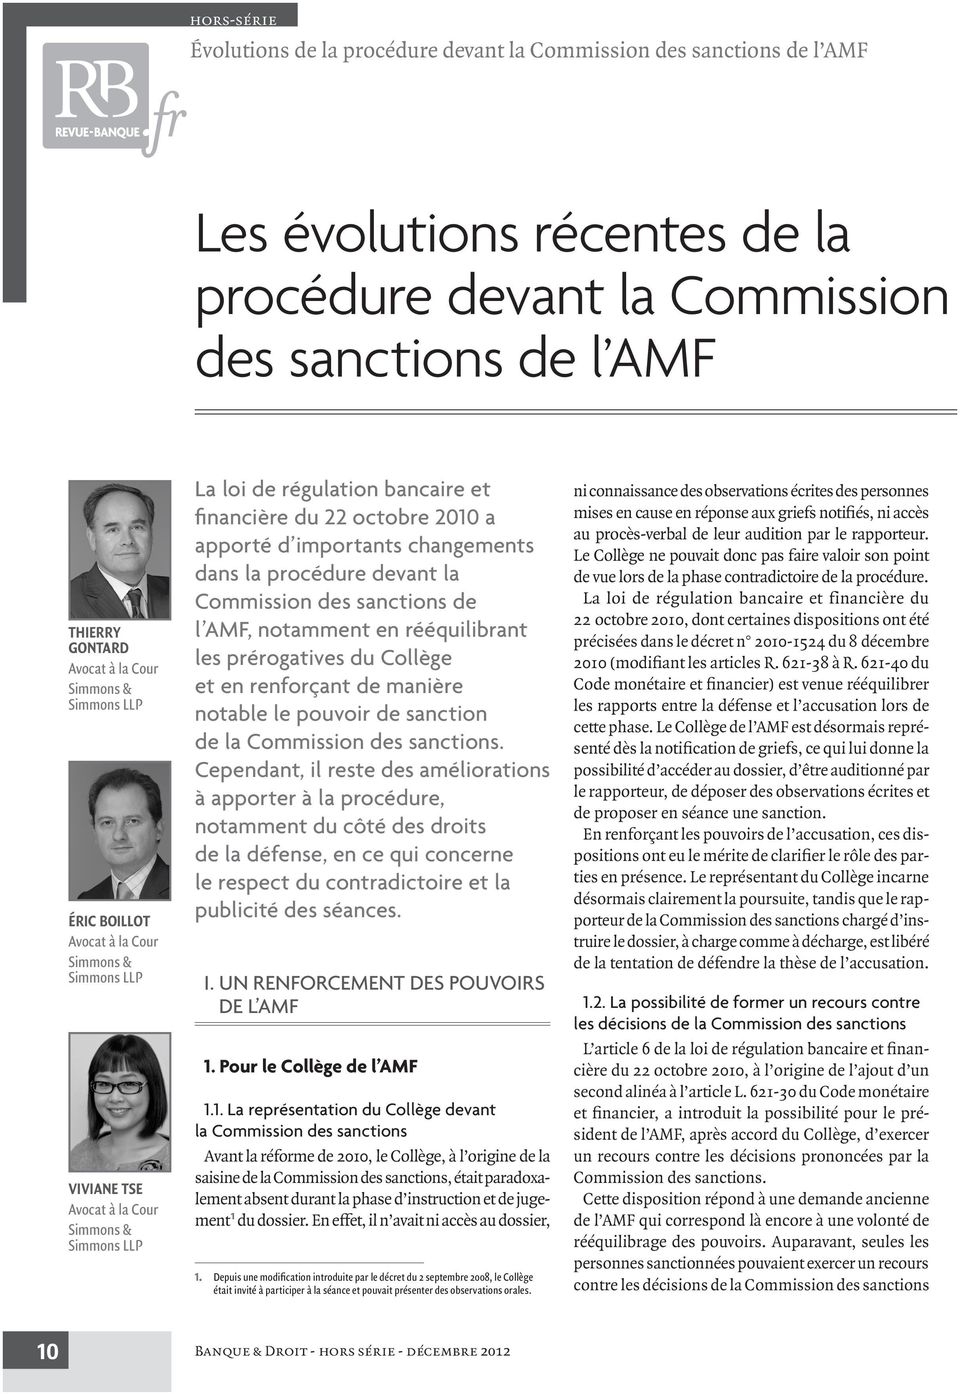 importants changements dans la procédure devant la Commission des sanctions de l AMF, notamment en rééquilibrant les prérogatives du Collège et en renforçant de manière notable le pouvoir de sanction